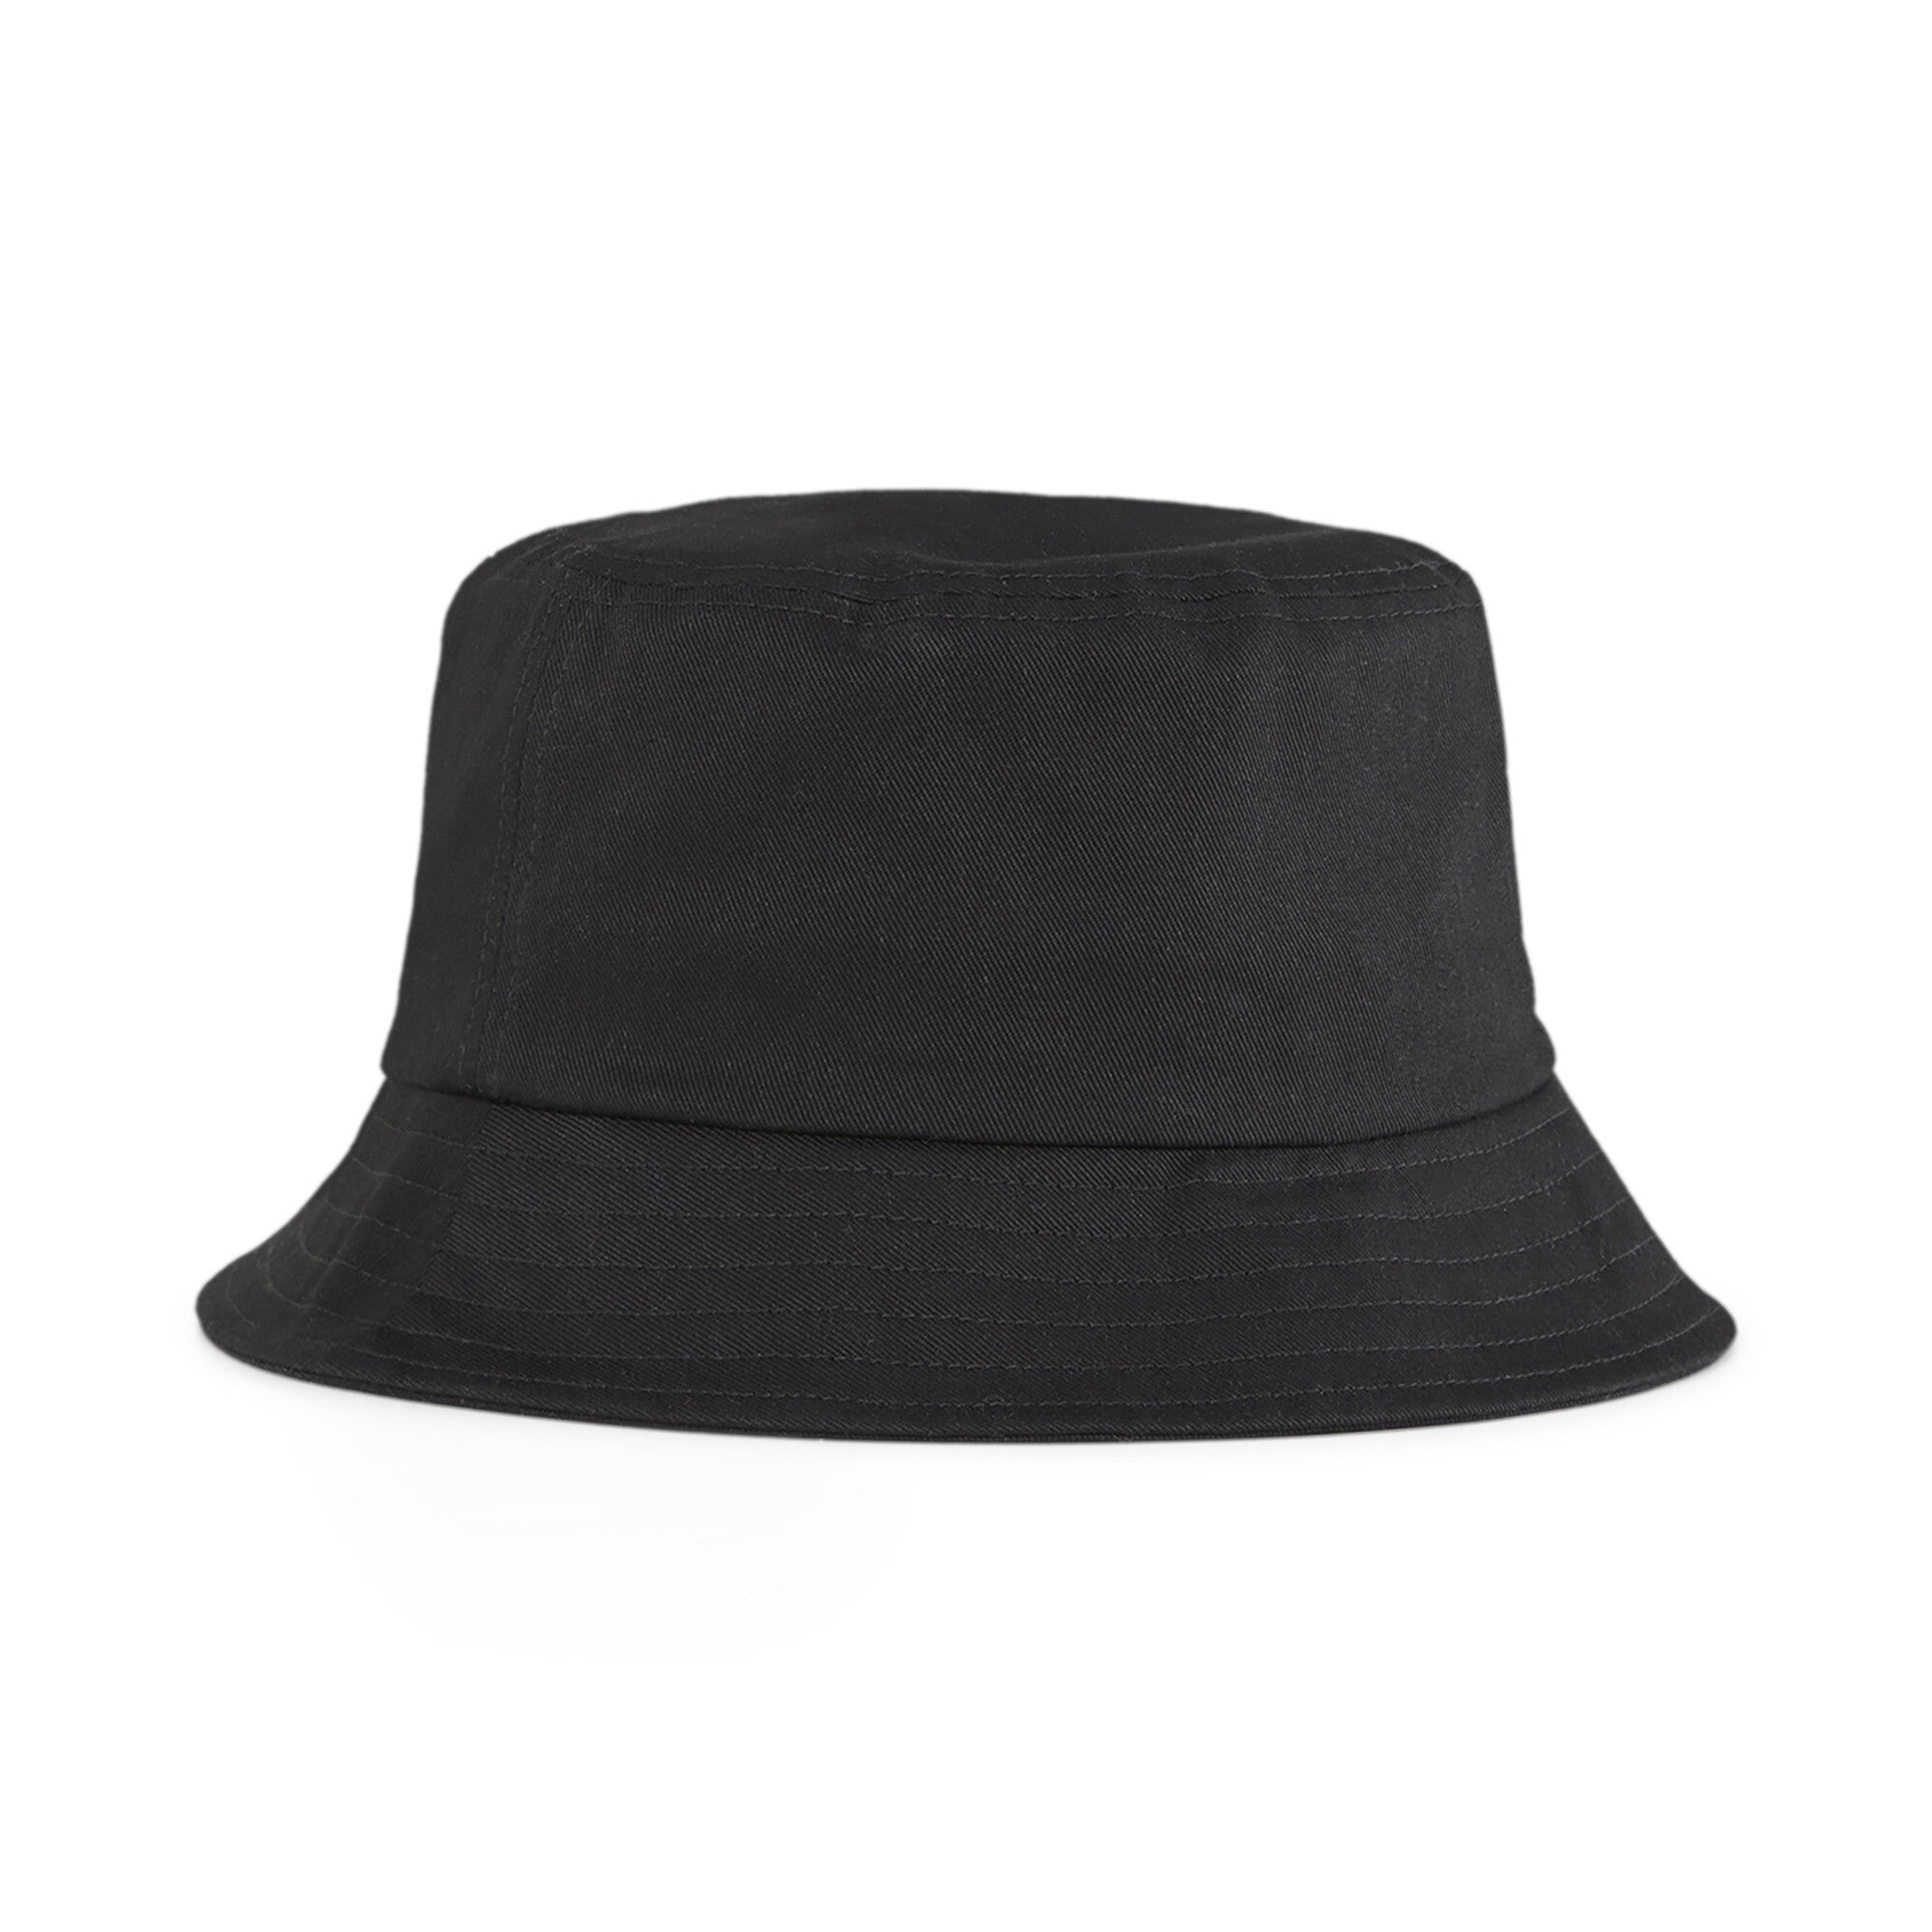 Puma ESS Logo Bucket Hat